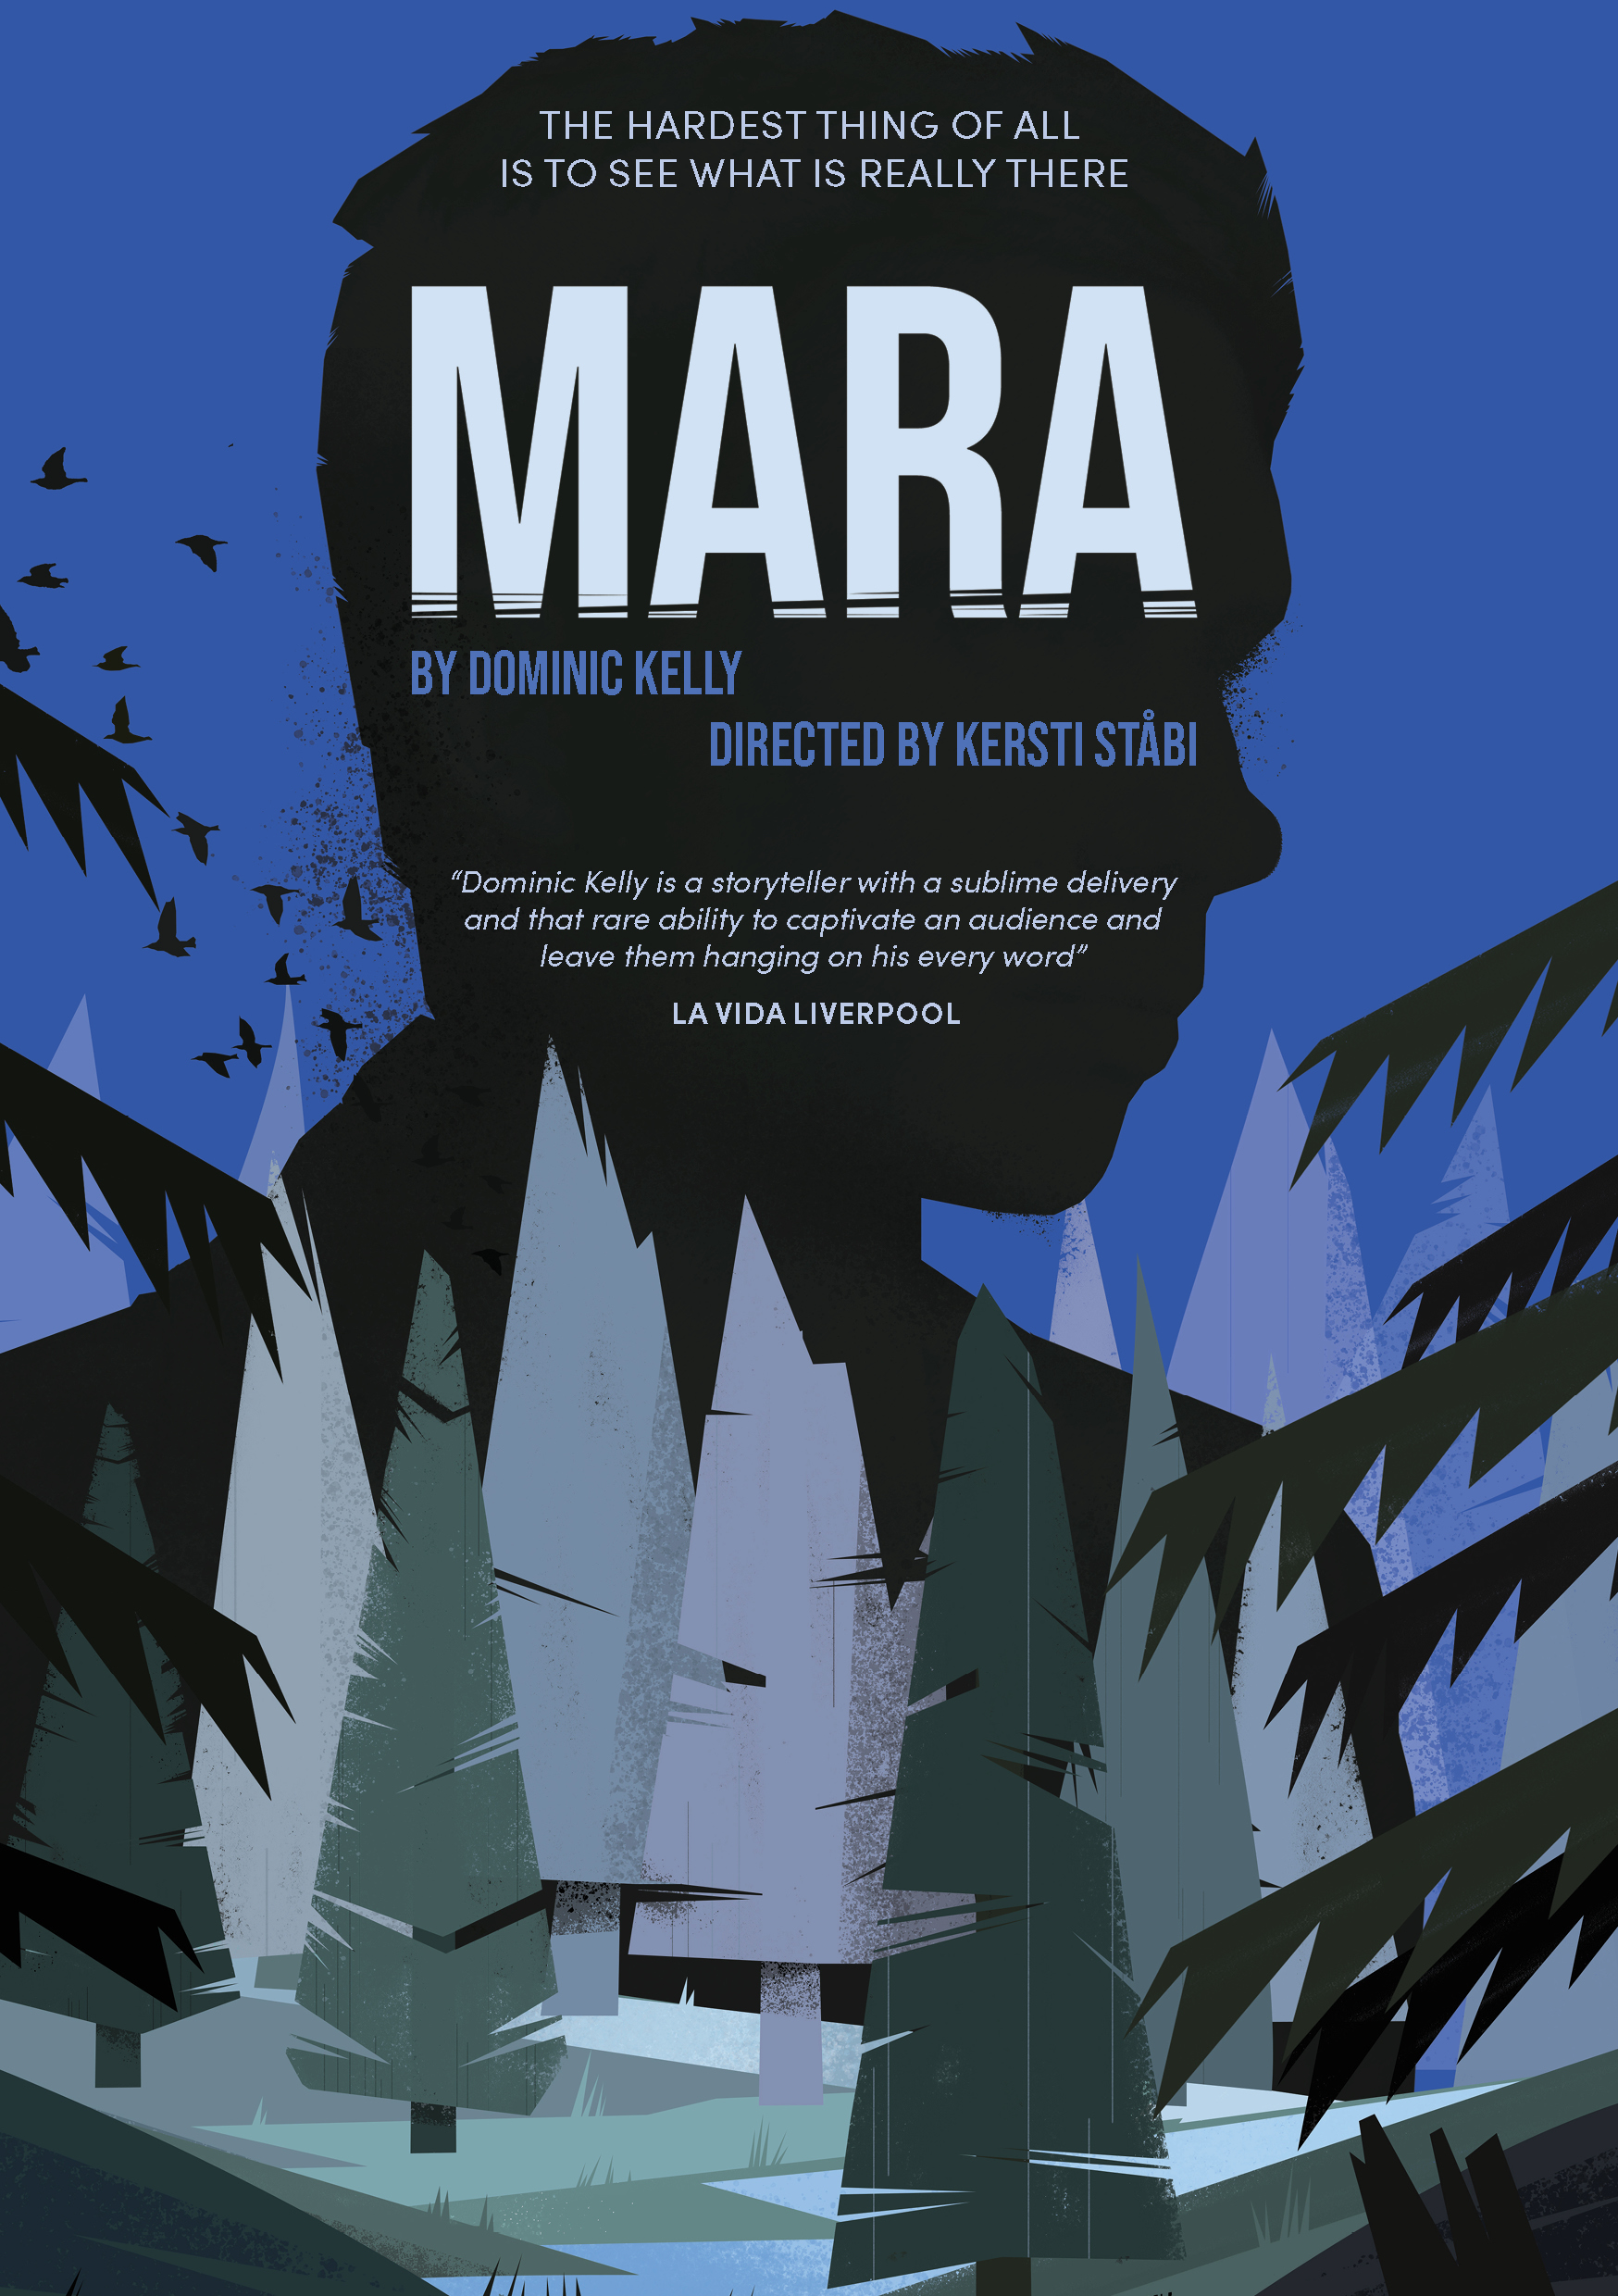 Mara storytelling